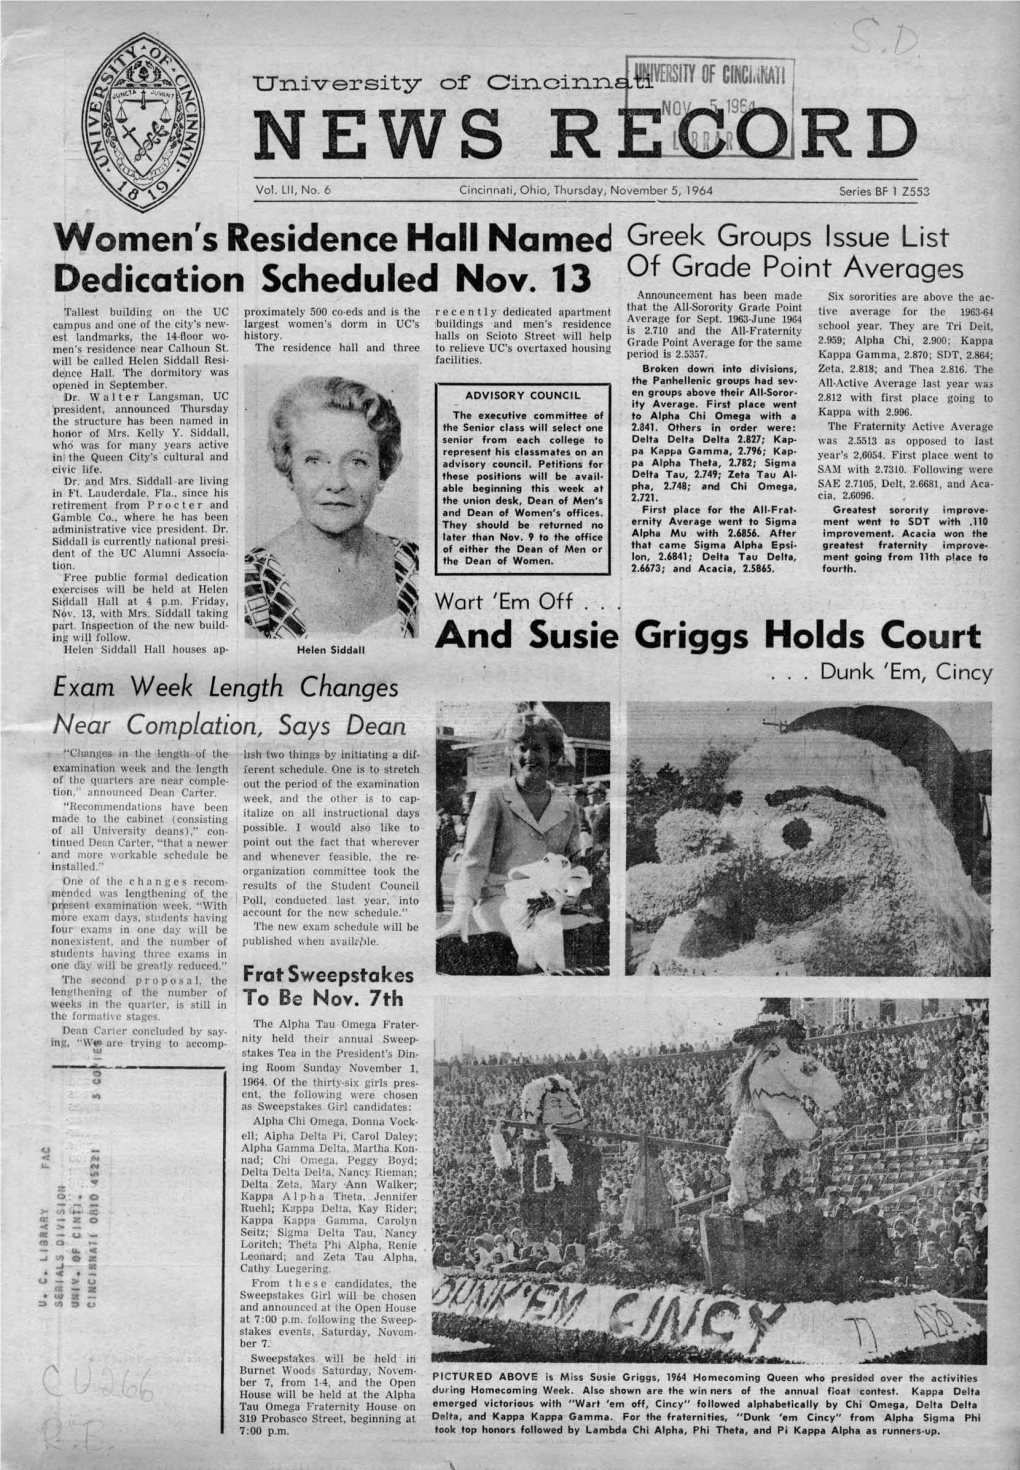 University of Cincinnati News Record. Thursday, November 5, 1964. Vol